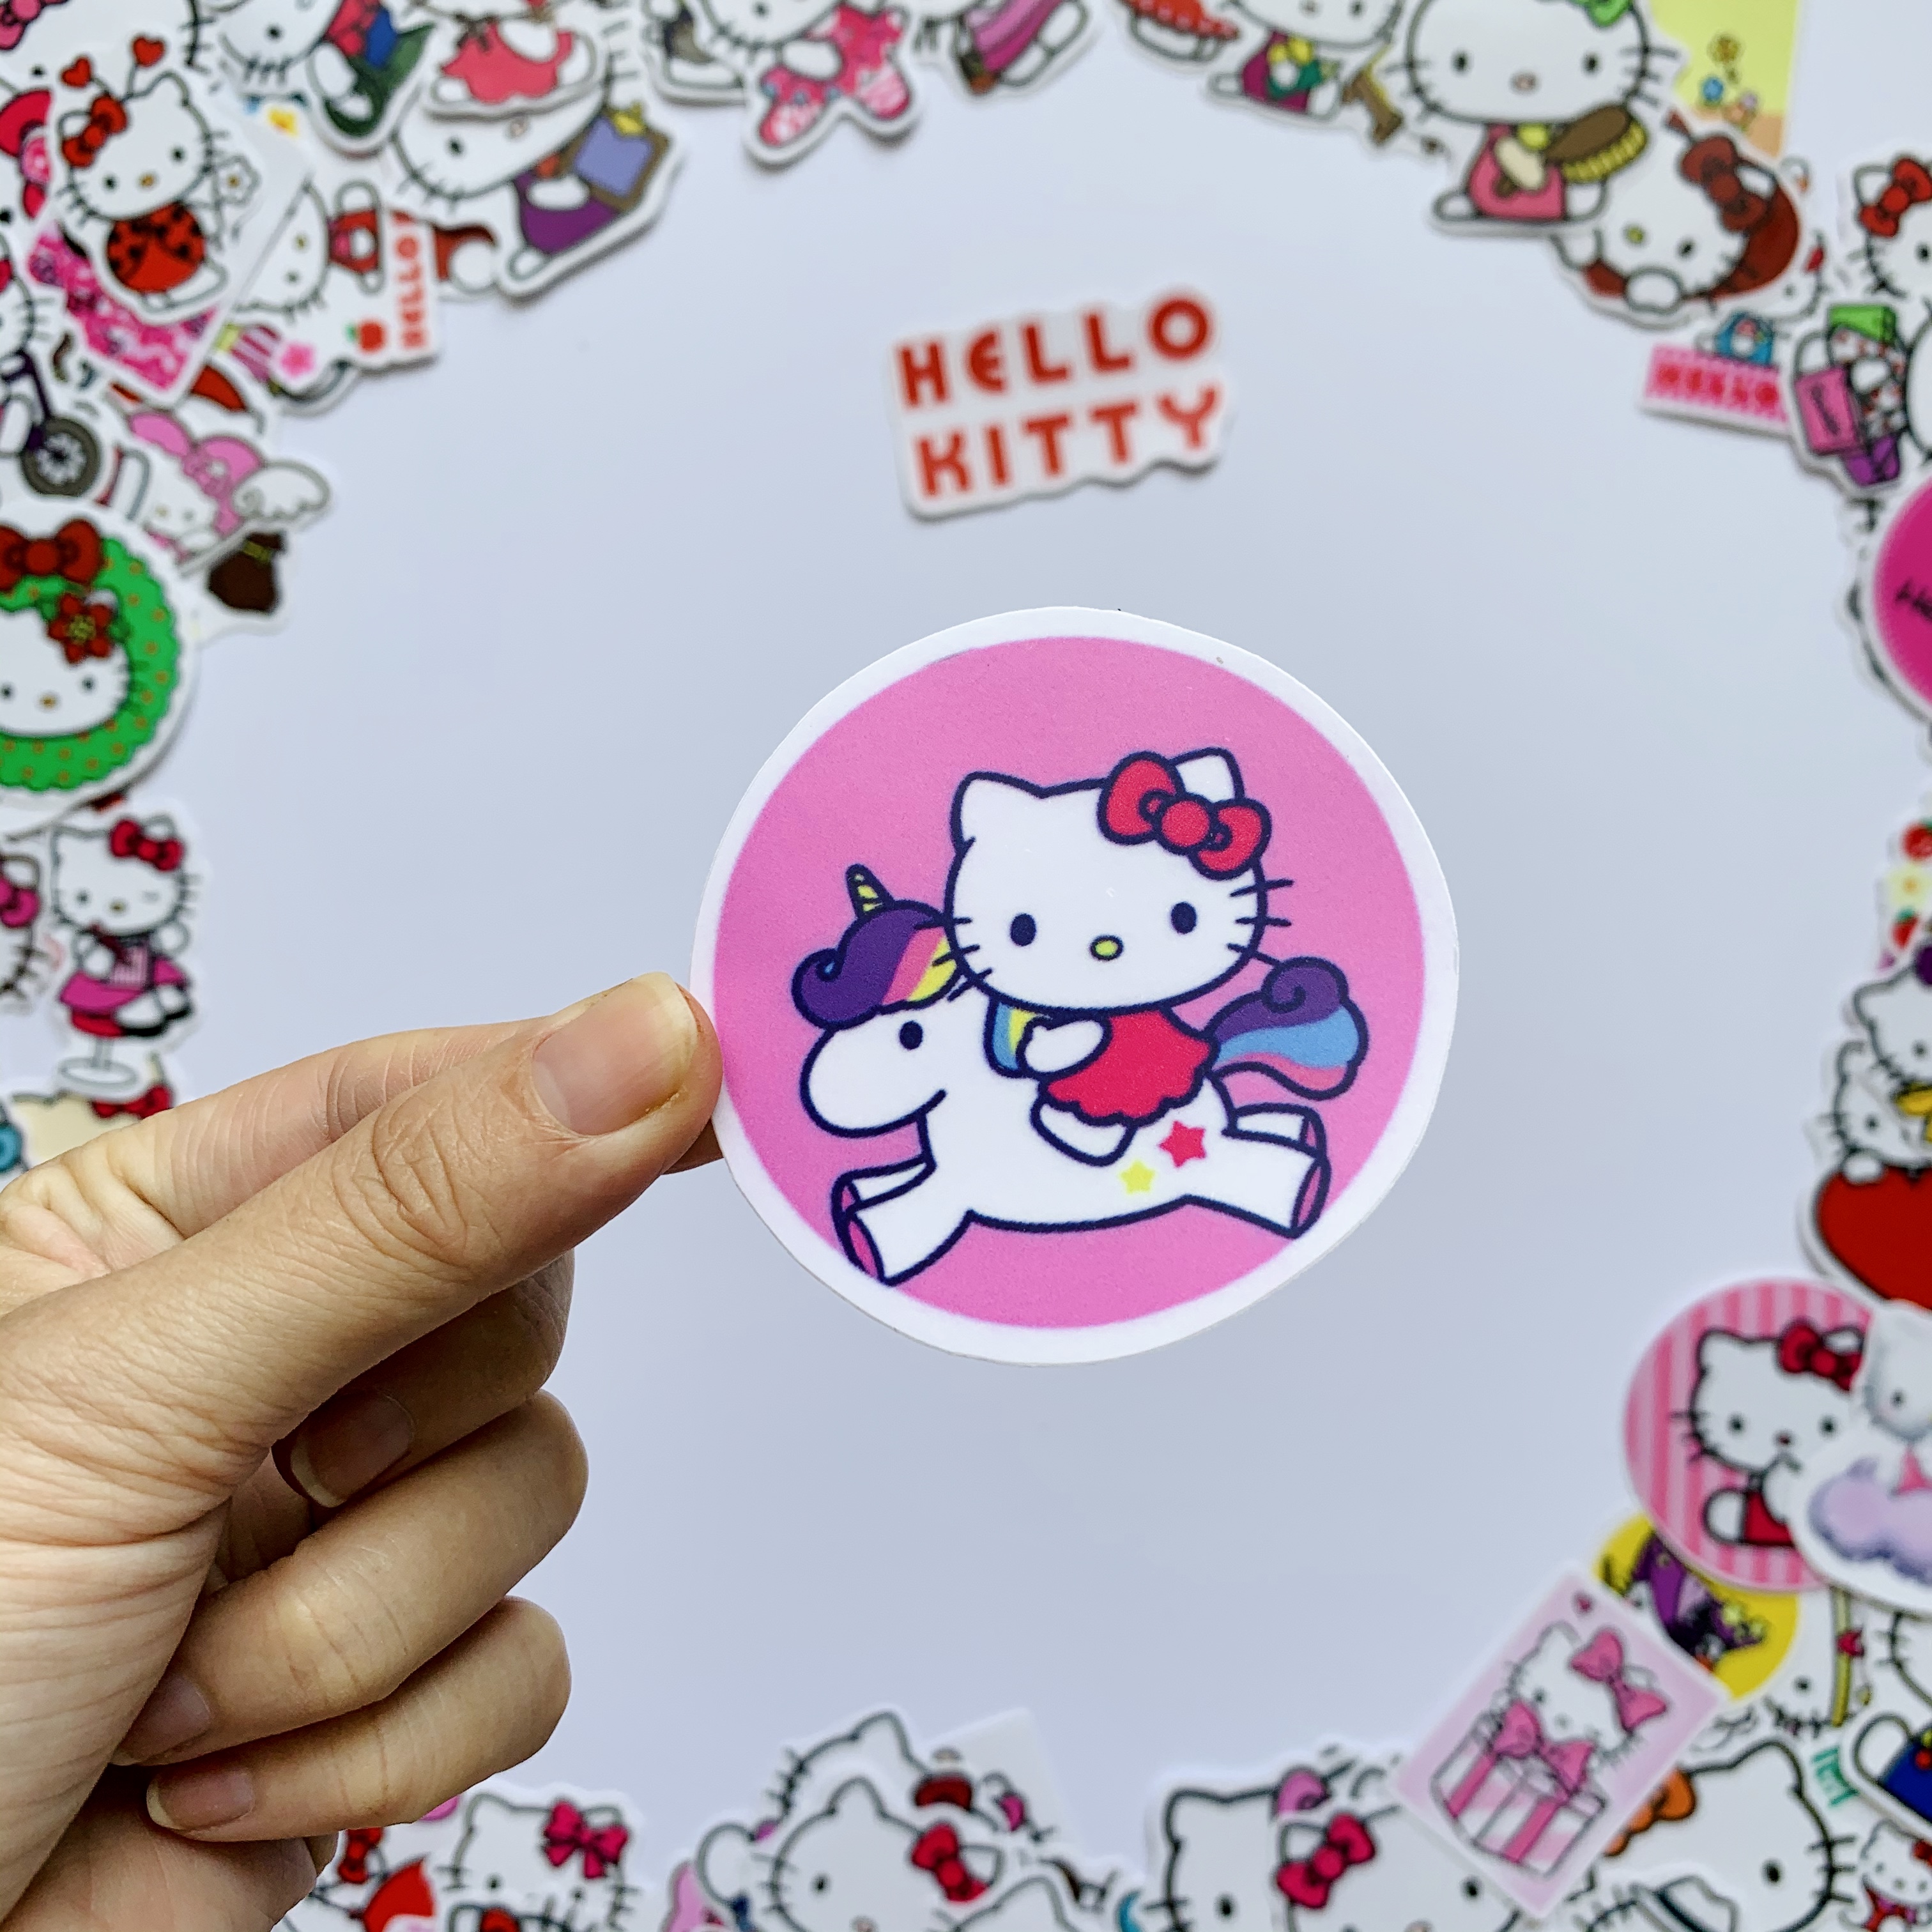 Bộ 20 Sticker Hello Kitty Hình Dán Chủ Đề Mèo Dễ Thương Cute Chống Nước Decal Chất Lượng Cao Trang Trí Va Ly Du Lịch Xe Đạp Xe Máy Xe Điện Motor Laptop Nón Bảo Hiểm Máy Tính Học Sinh Tủ Quần Áo Nắp Lưng Điện Thoại